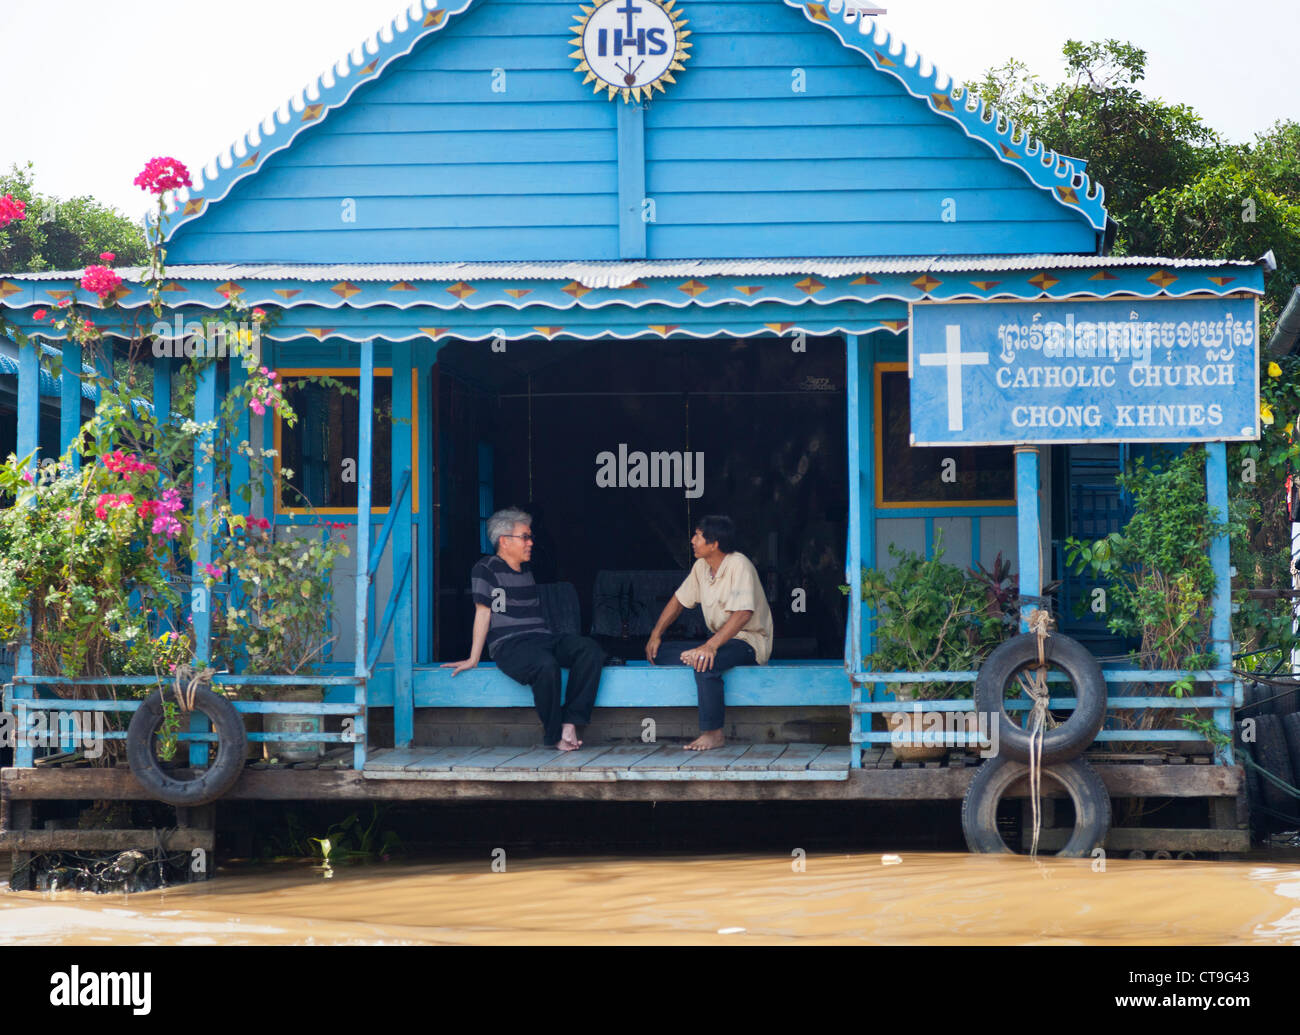 Floating community Catholic church on the Tonle Sap Lake, Siem Reap, Cambodia. Stock Photo